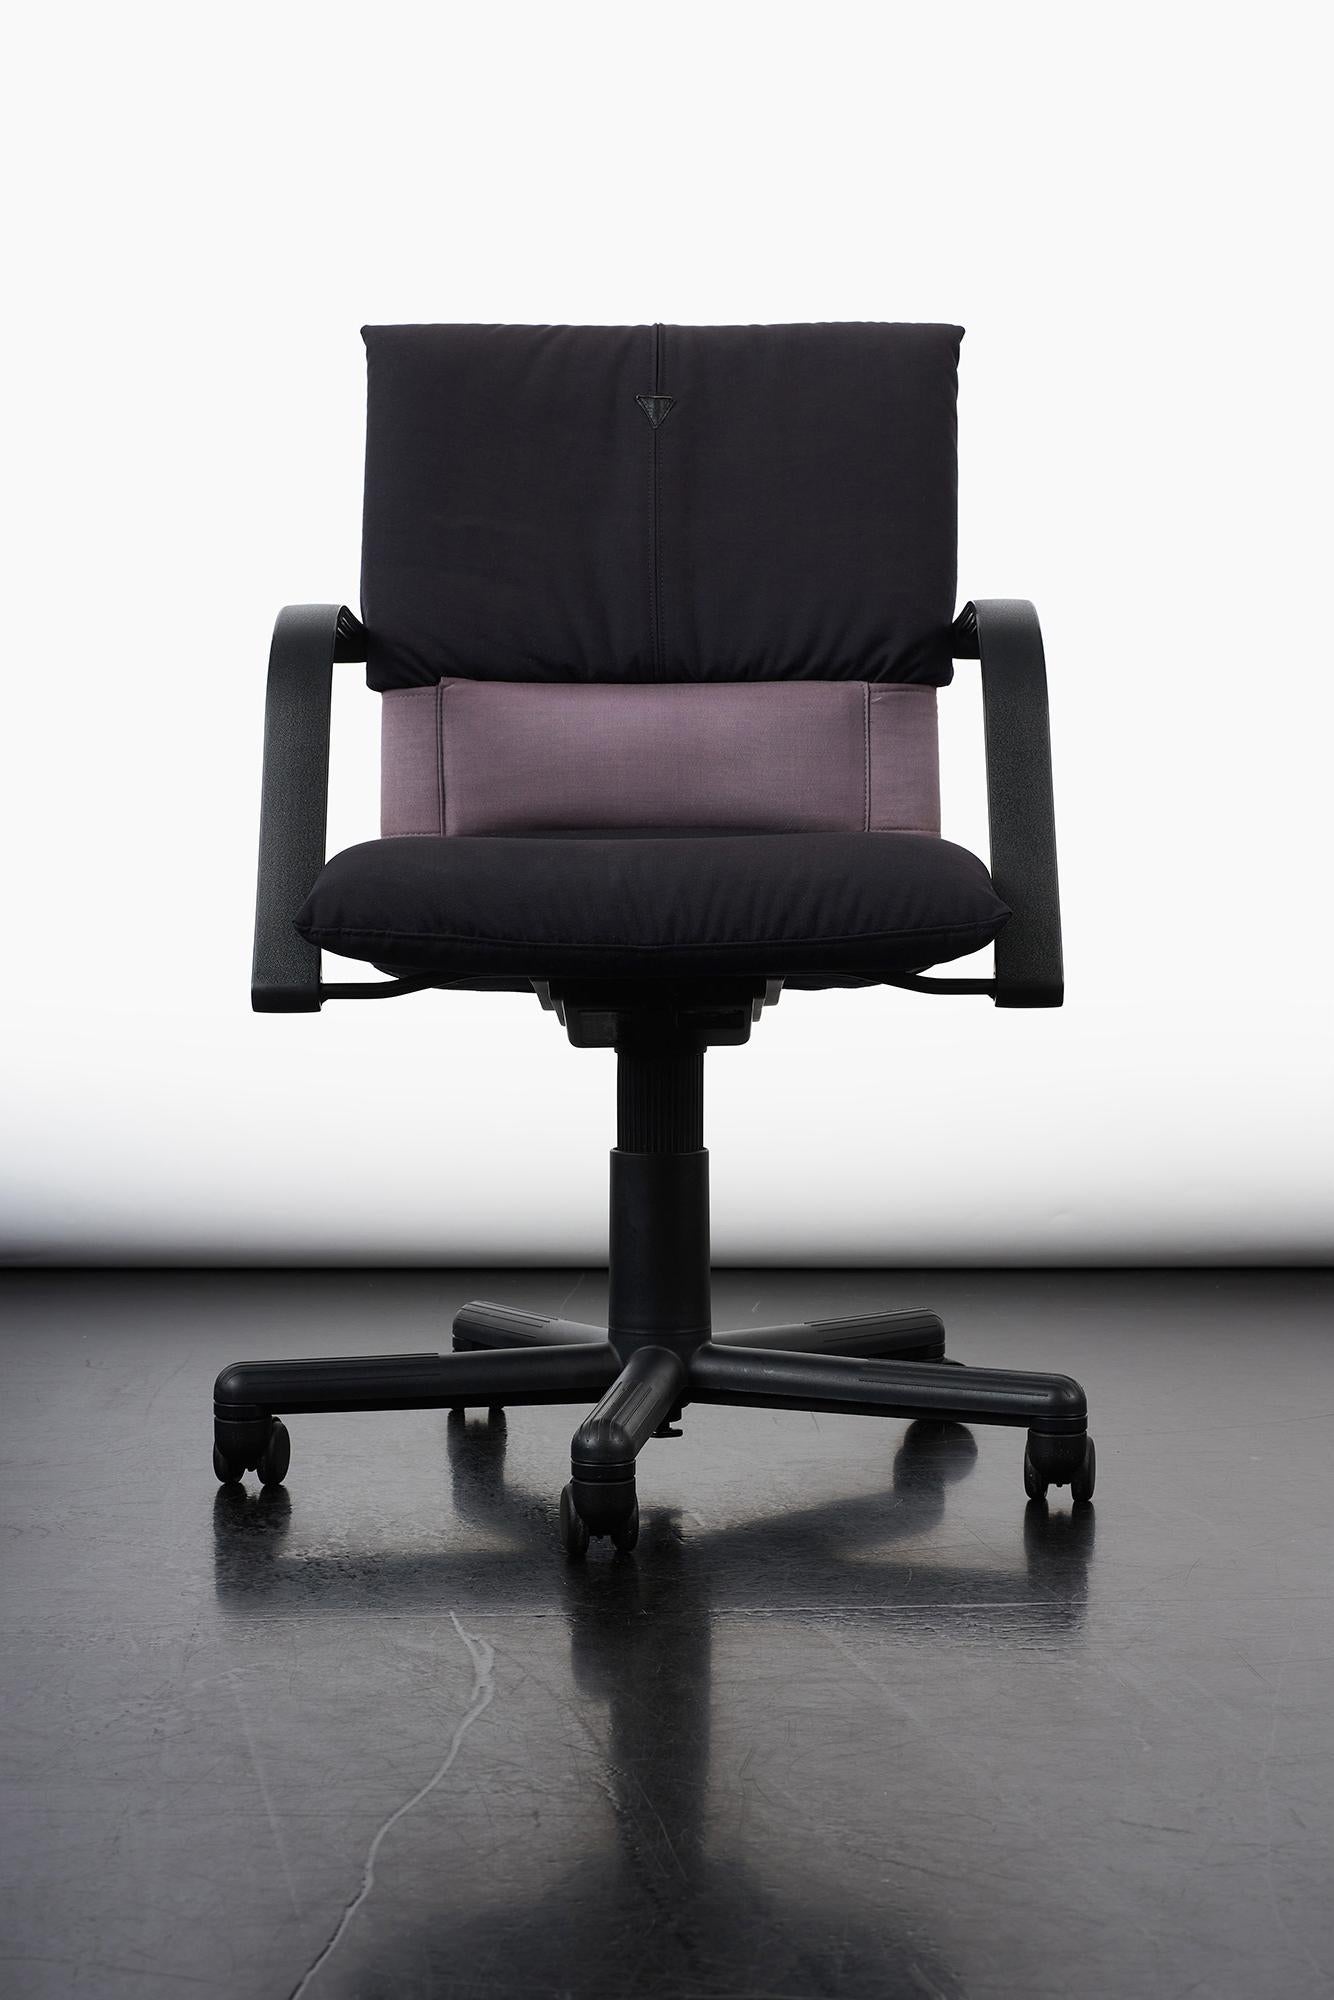 Chaise Figura conçue par Mario Bellini pour Vitra, Italie 1984.
Figura combine trois fonctions ergonomiques importantes en une seule chaise, créant ainsi les conditions optimales pour des réglages ergonomiques corrects.
Prix Figura :
•1985